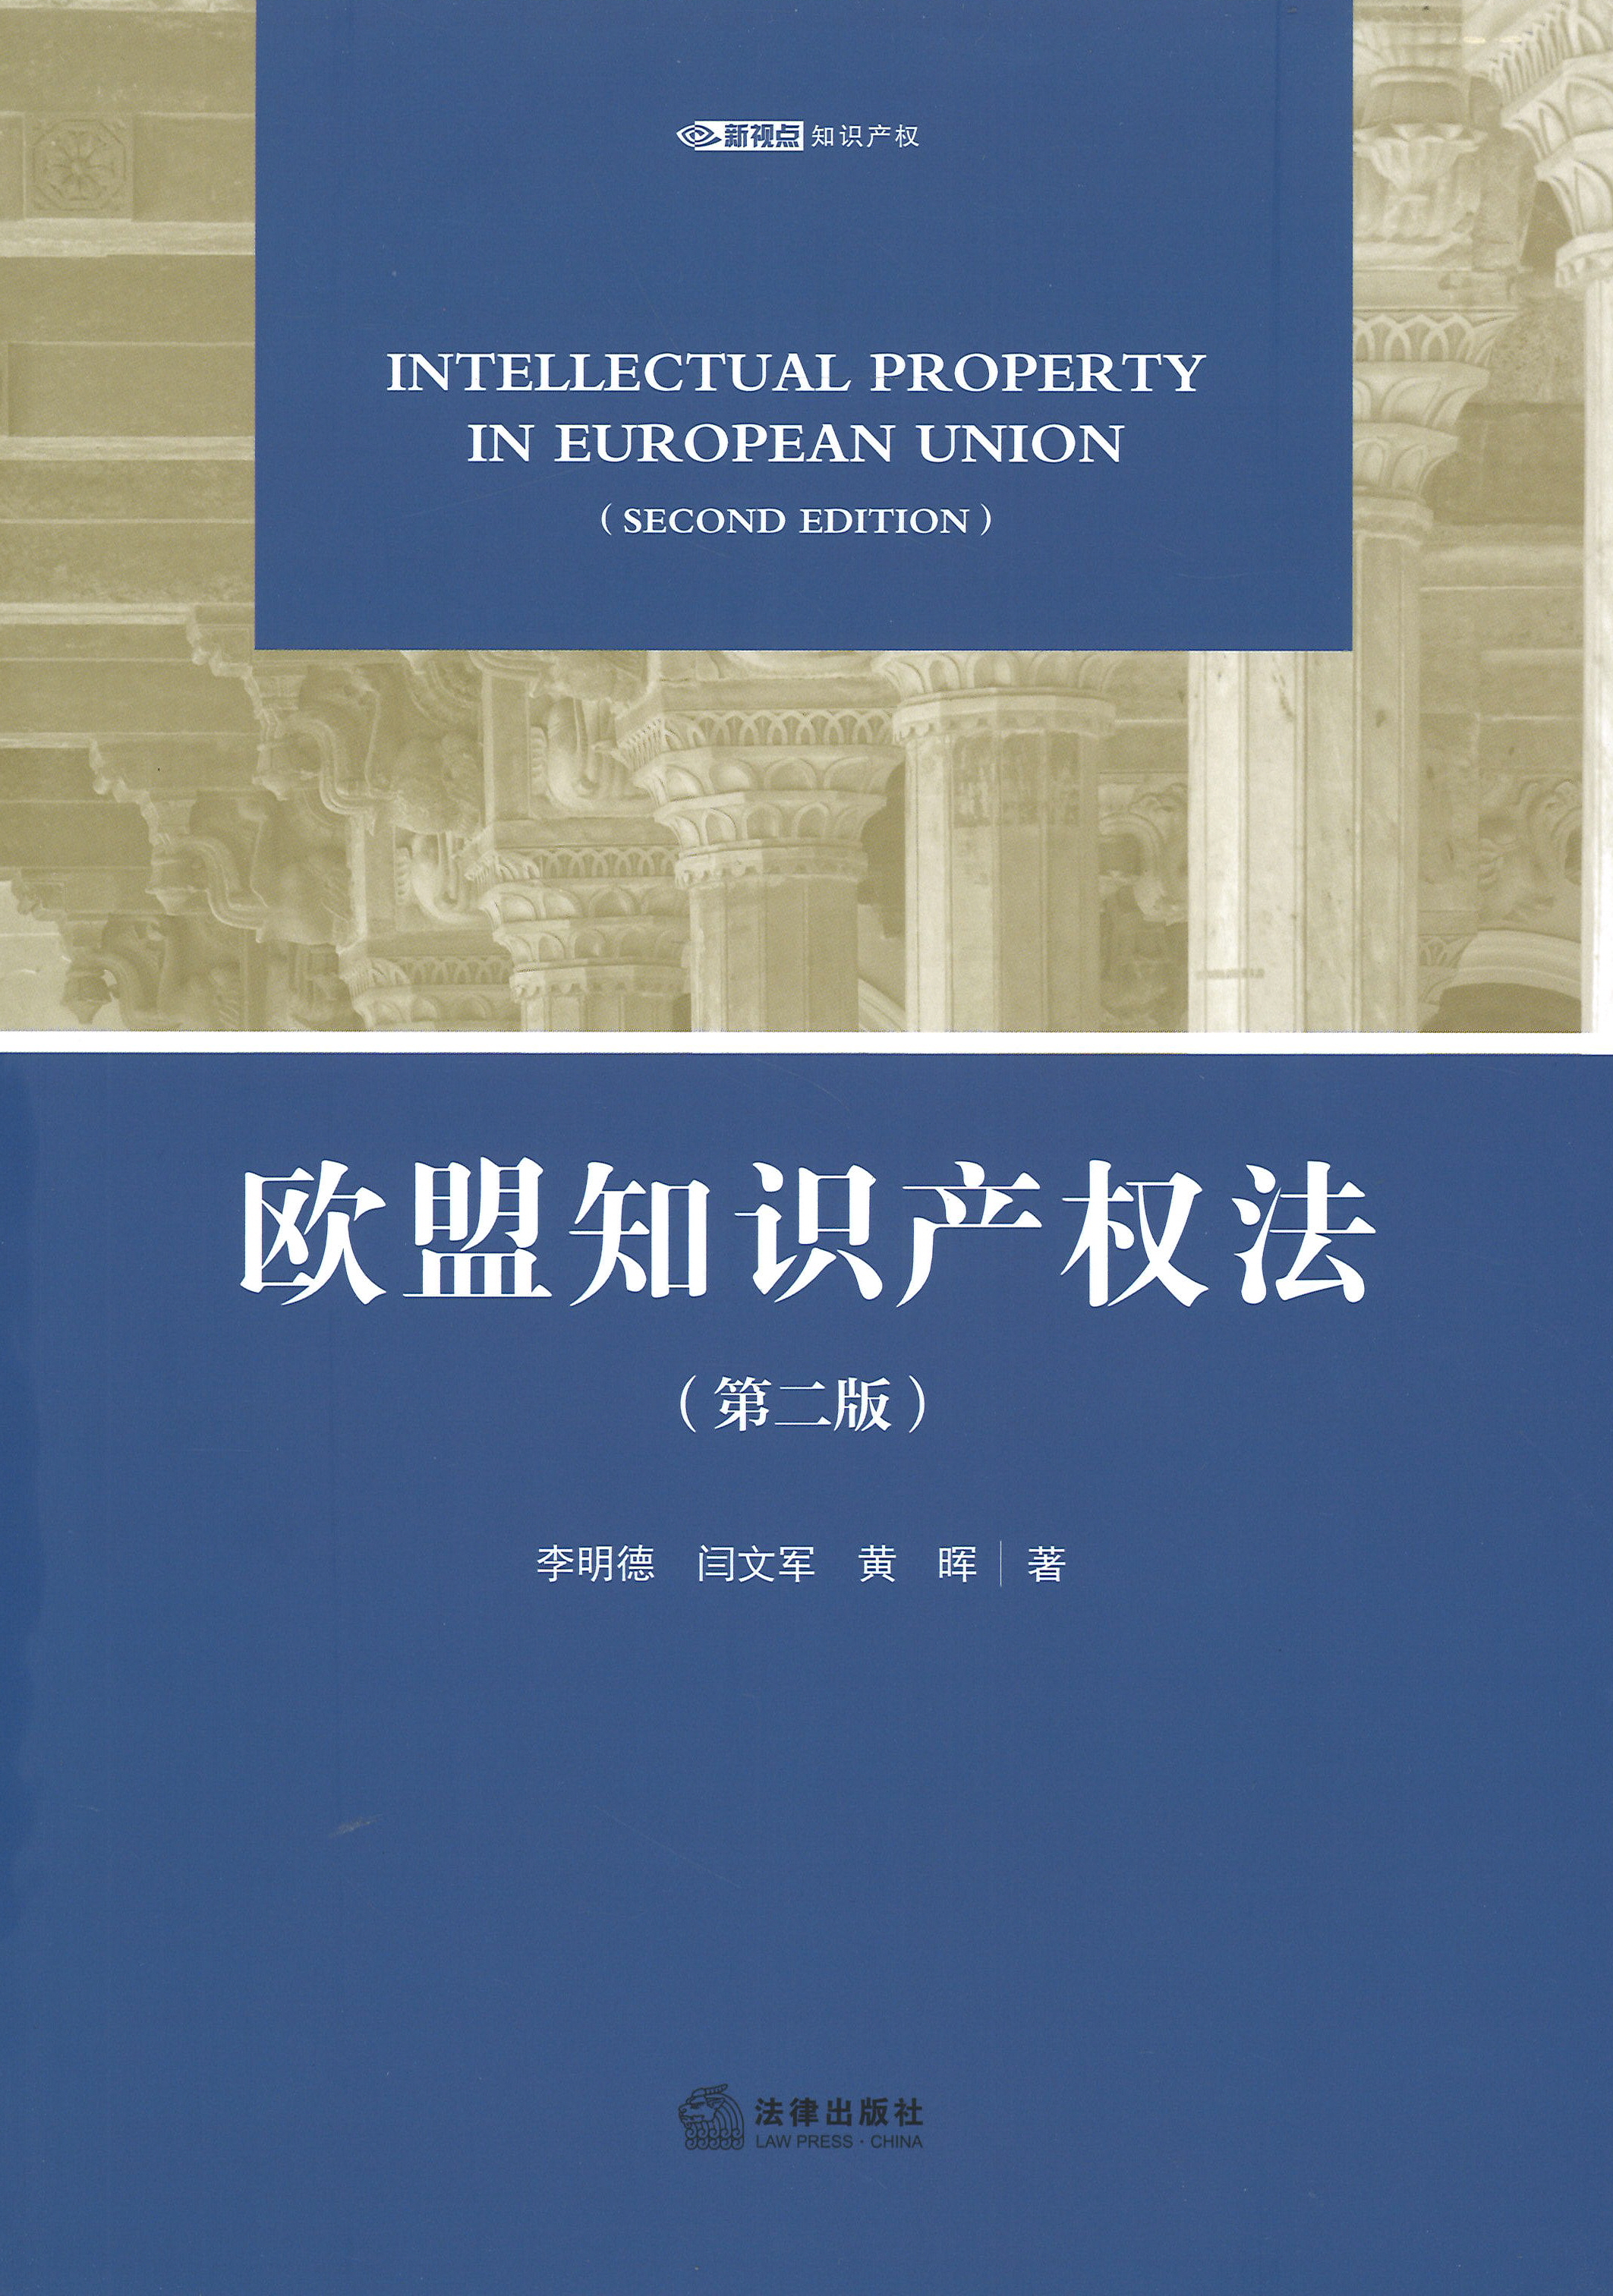 欧盟知识产权法 = Intellectual property in European Union / 李明德, 闫文军, 黄晖 著